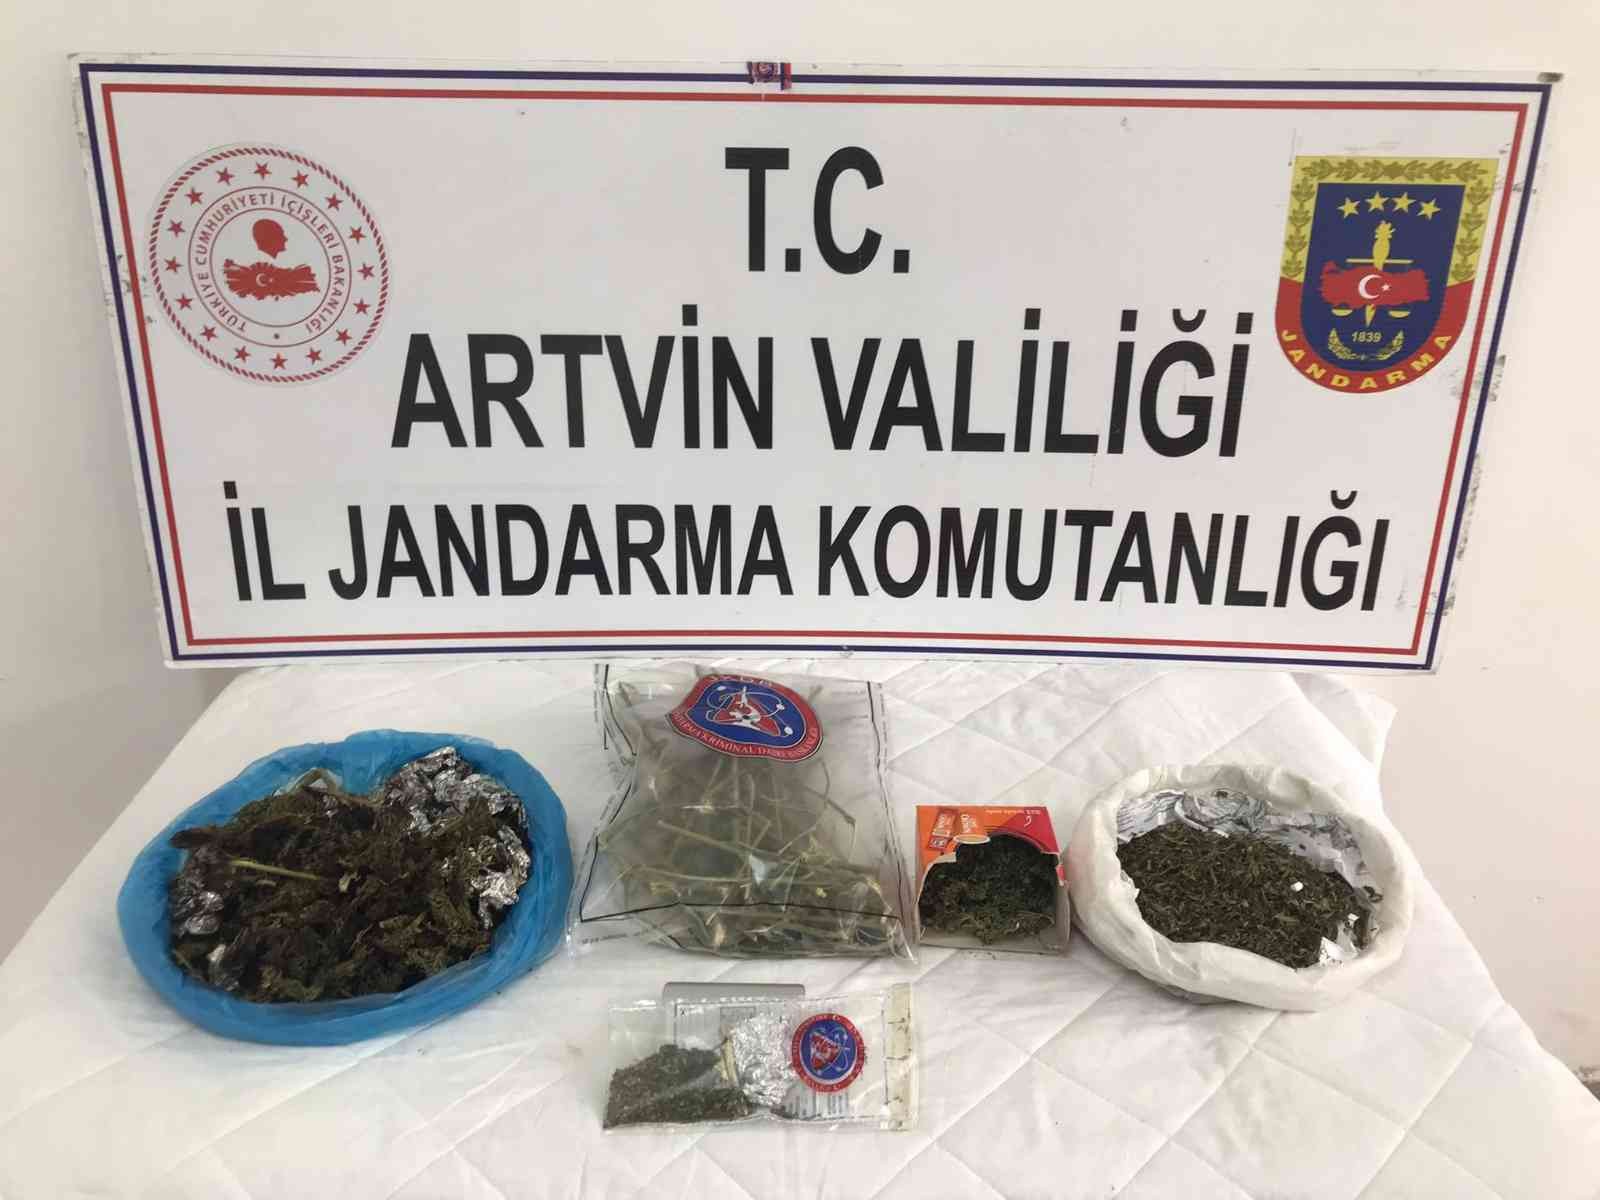 Artvin’de jandarmanın uyuşturucu operasyonunda 3 kişi gözaltına alındı #artvin